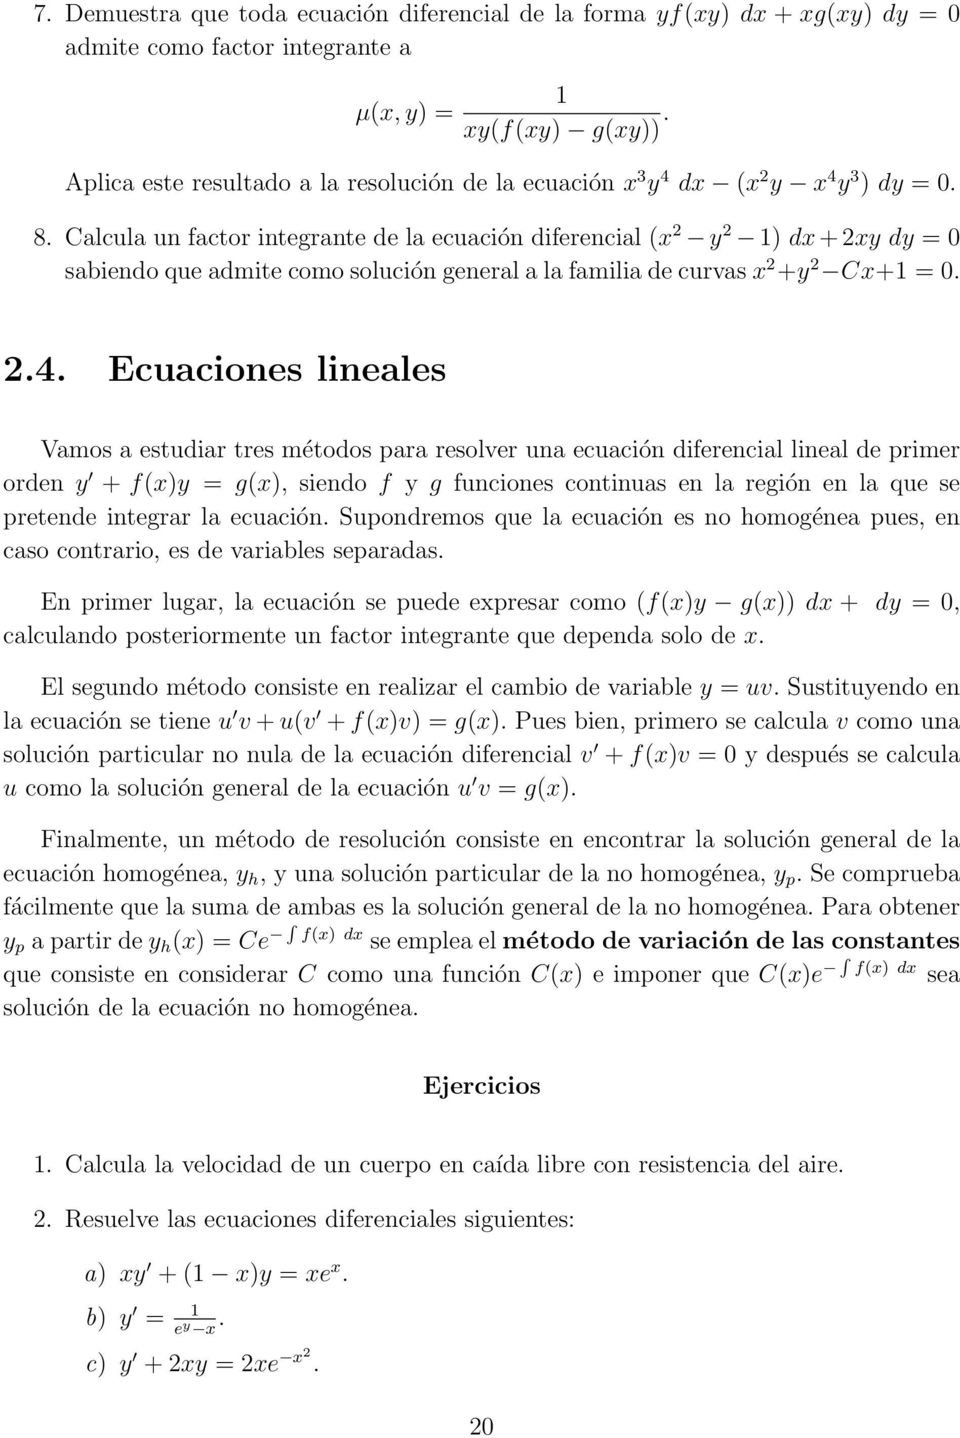 24 Ecuaciones lineales Vamos a estudiar tres métodos para resolver una ecuación diferencial lineal de primer orden y + f(x)y = g(x), siendo f y g funciones continuas en la región en la que se